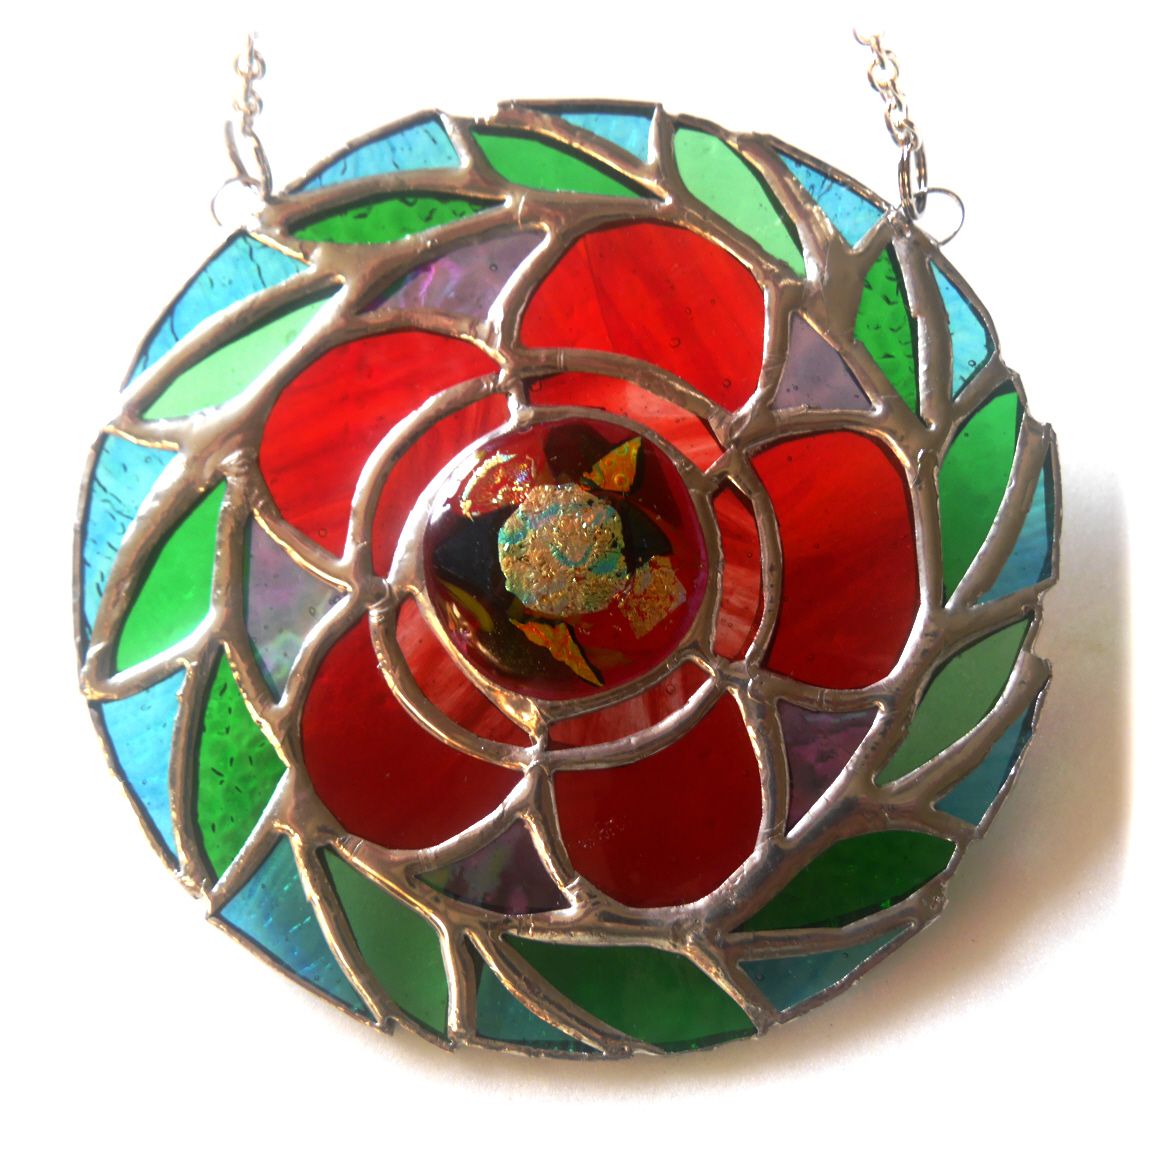 Floral Vibrant Swirl Stained Glass Art Suncatcher Handmade